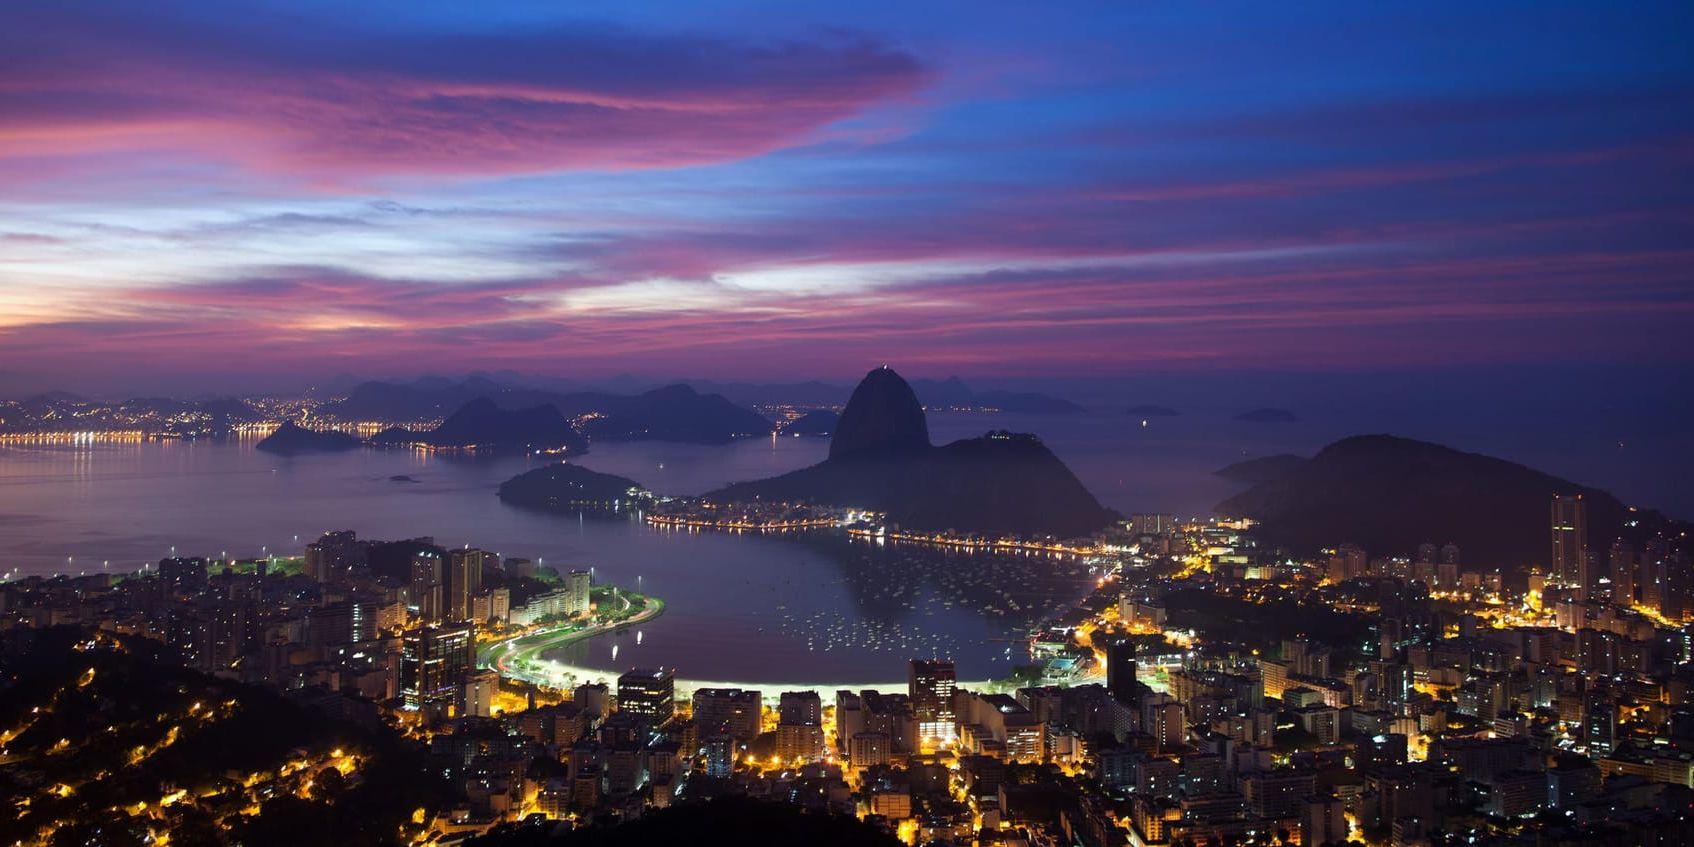 Hållbara städer är i fokus när Glocal film festival kommer till Luleå. På bilden Rio de Janeiro, som i somras var värd för en FN-konferens om hållbar utveckling. Arkivbild.